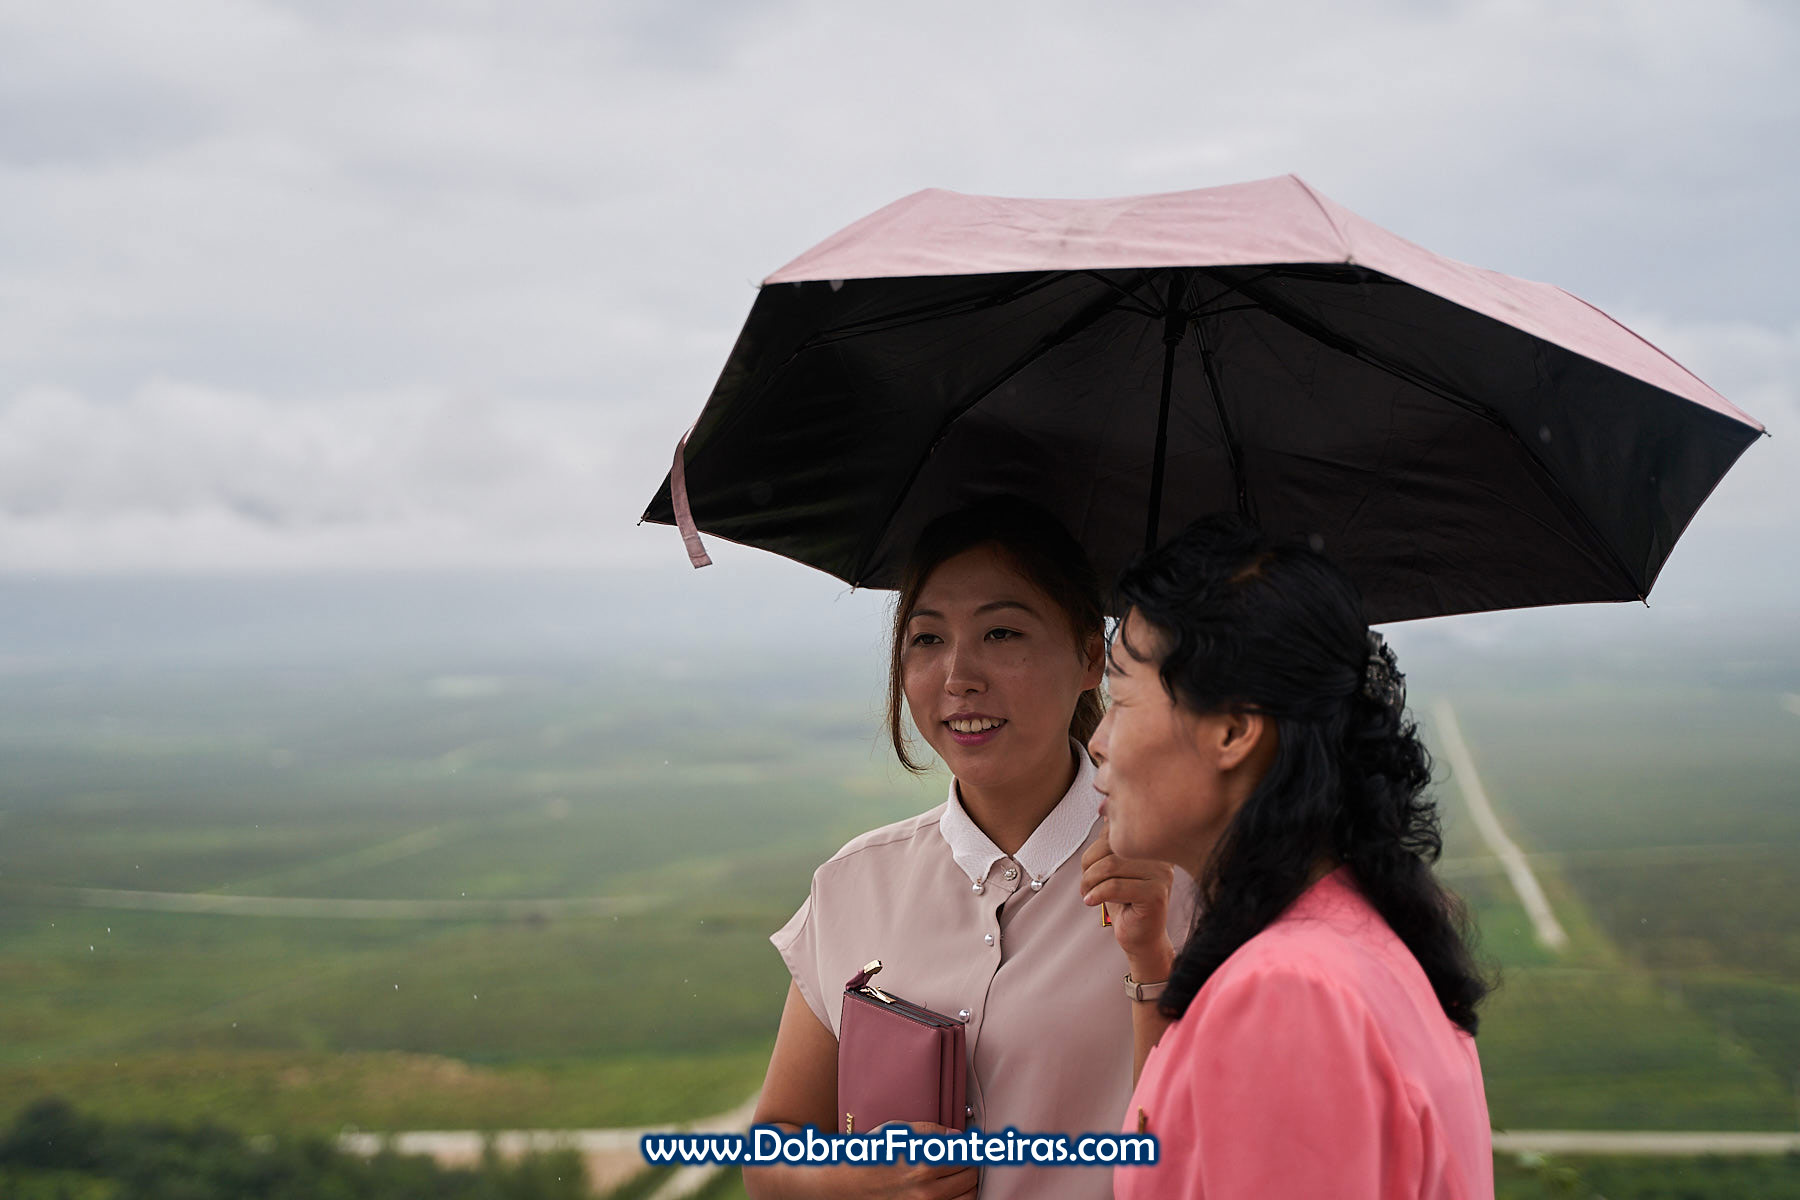 Guias norte coreanas durante visita em dia de chuva